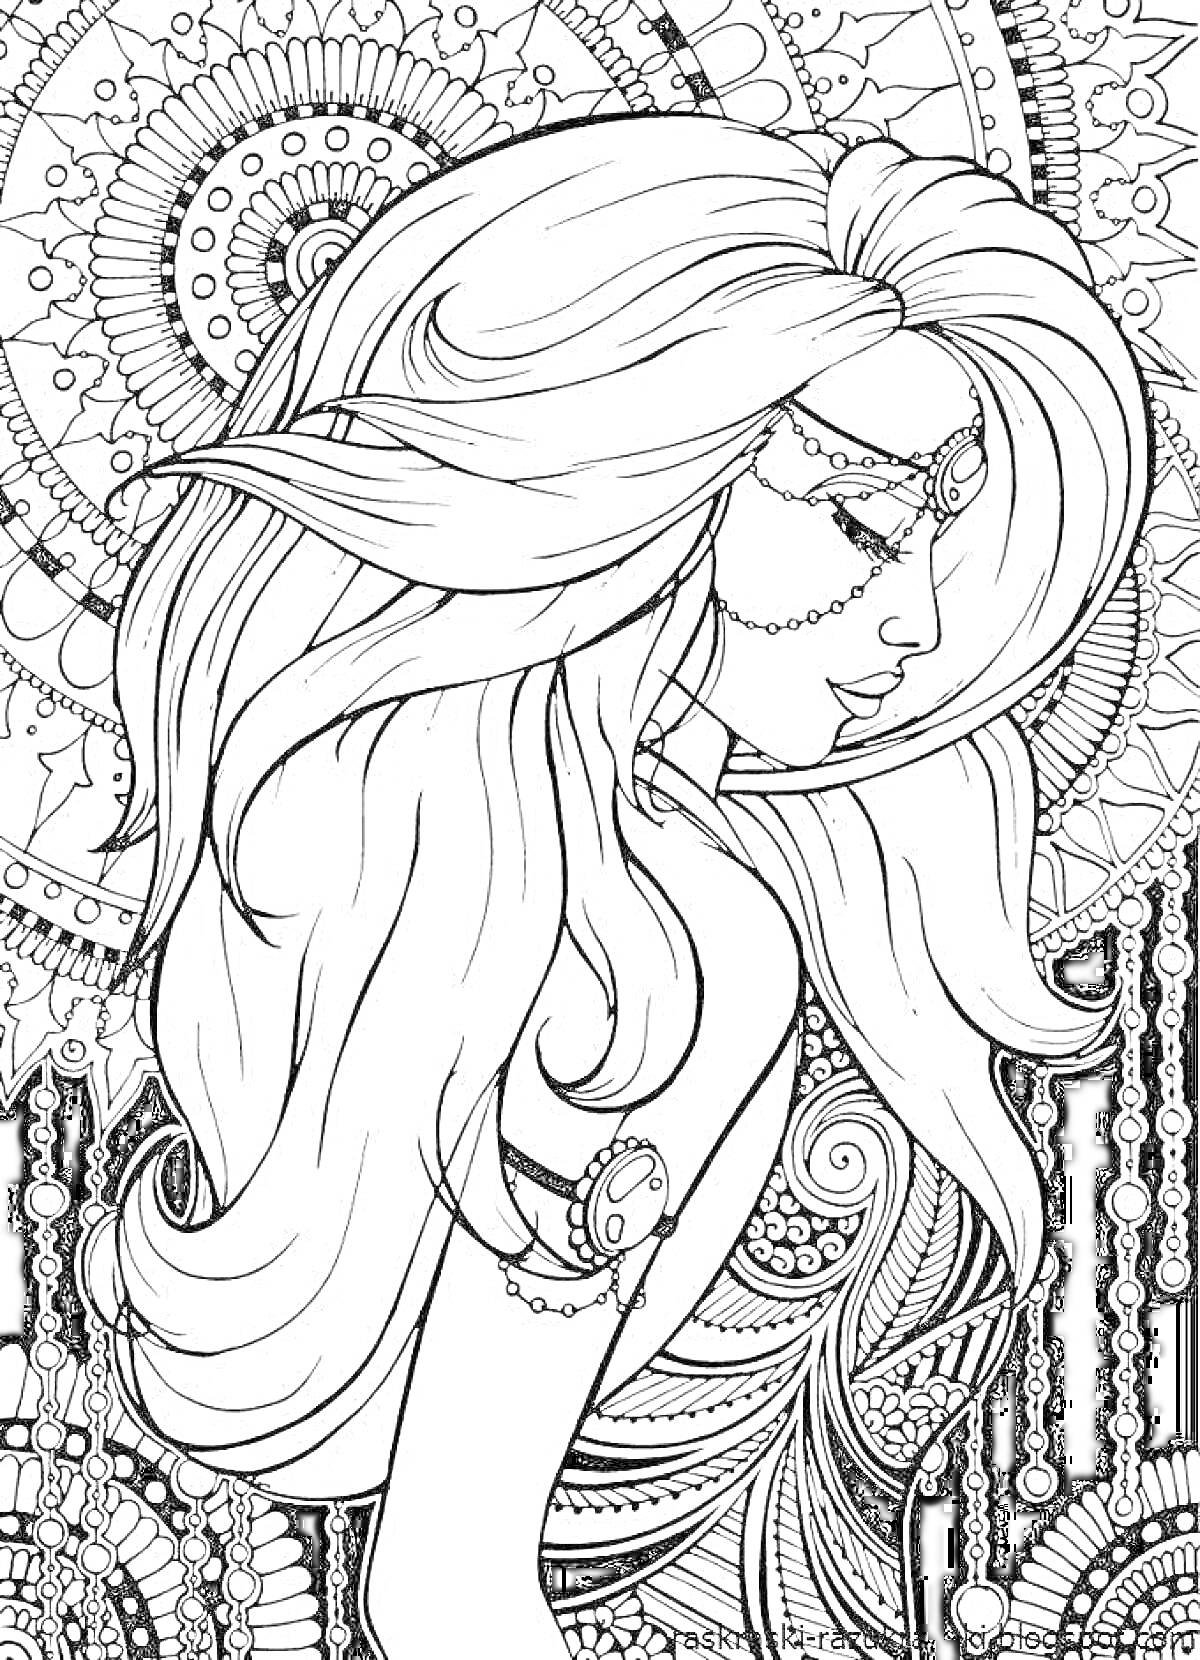 Раскраска Девушка с длинными волосами и украшениями на фоне мандалы